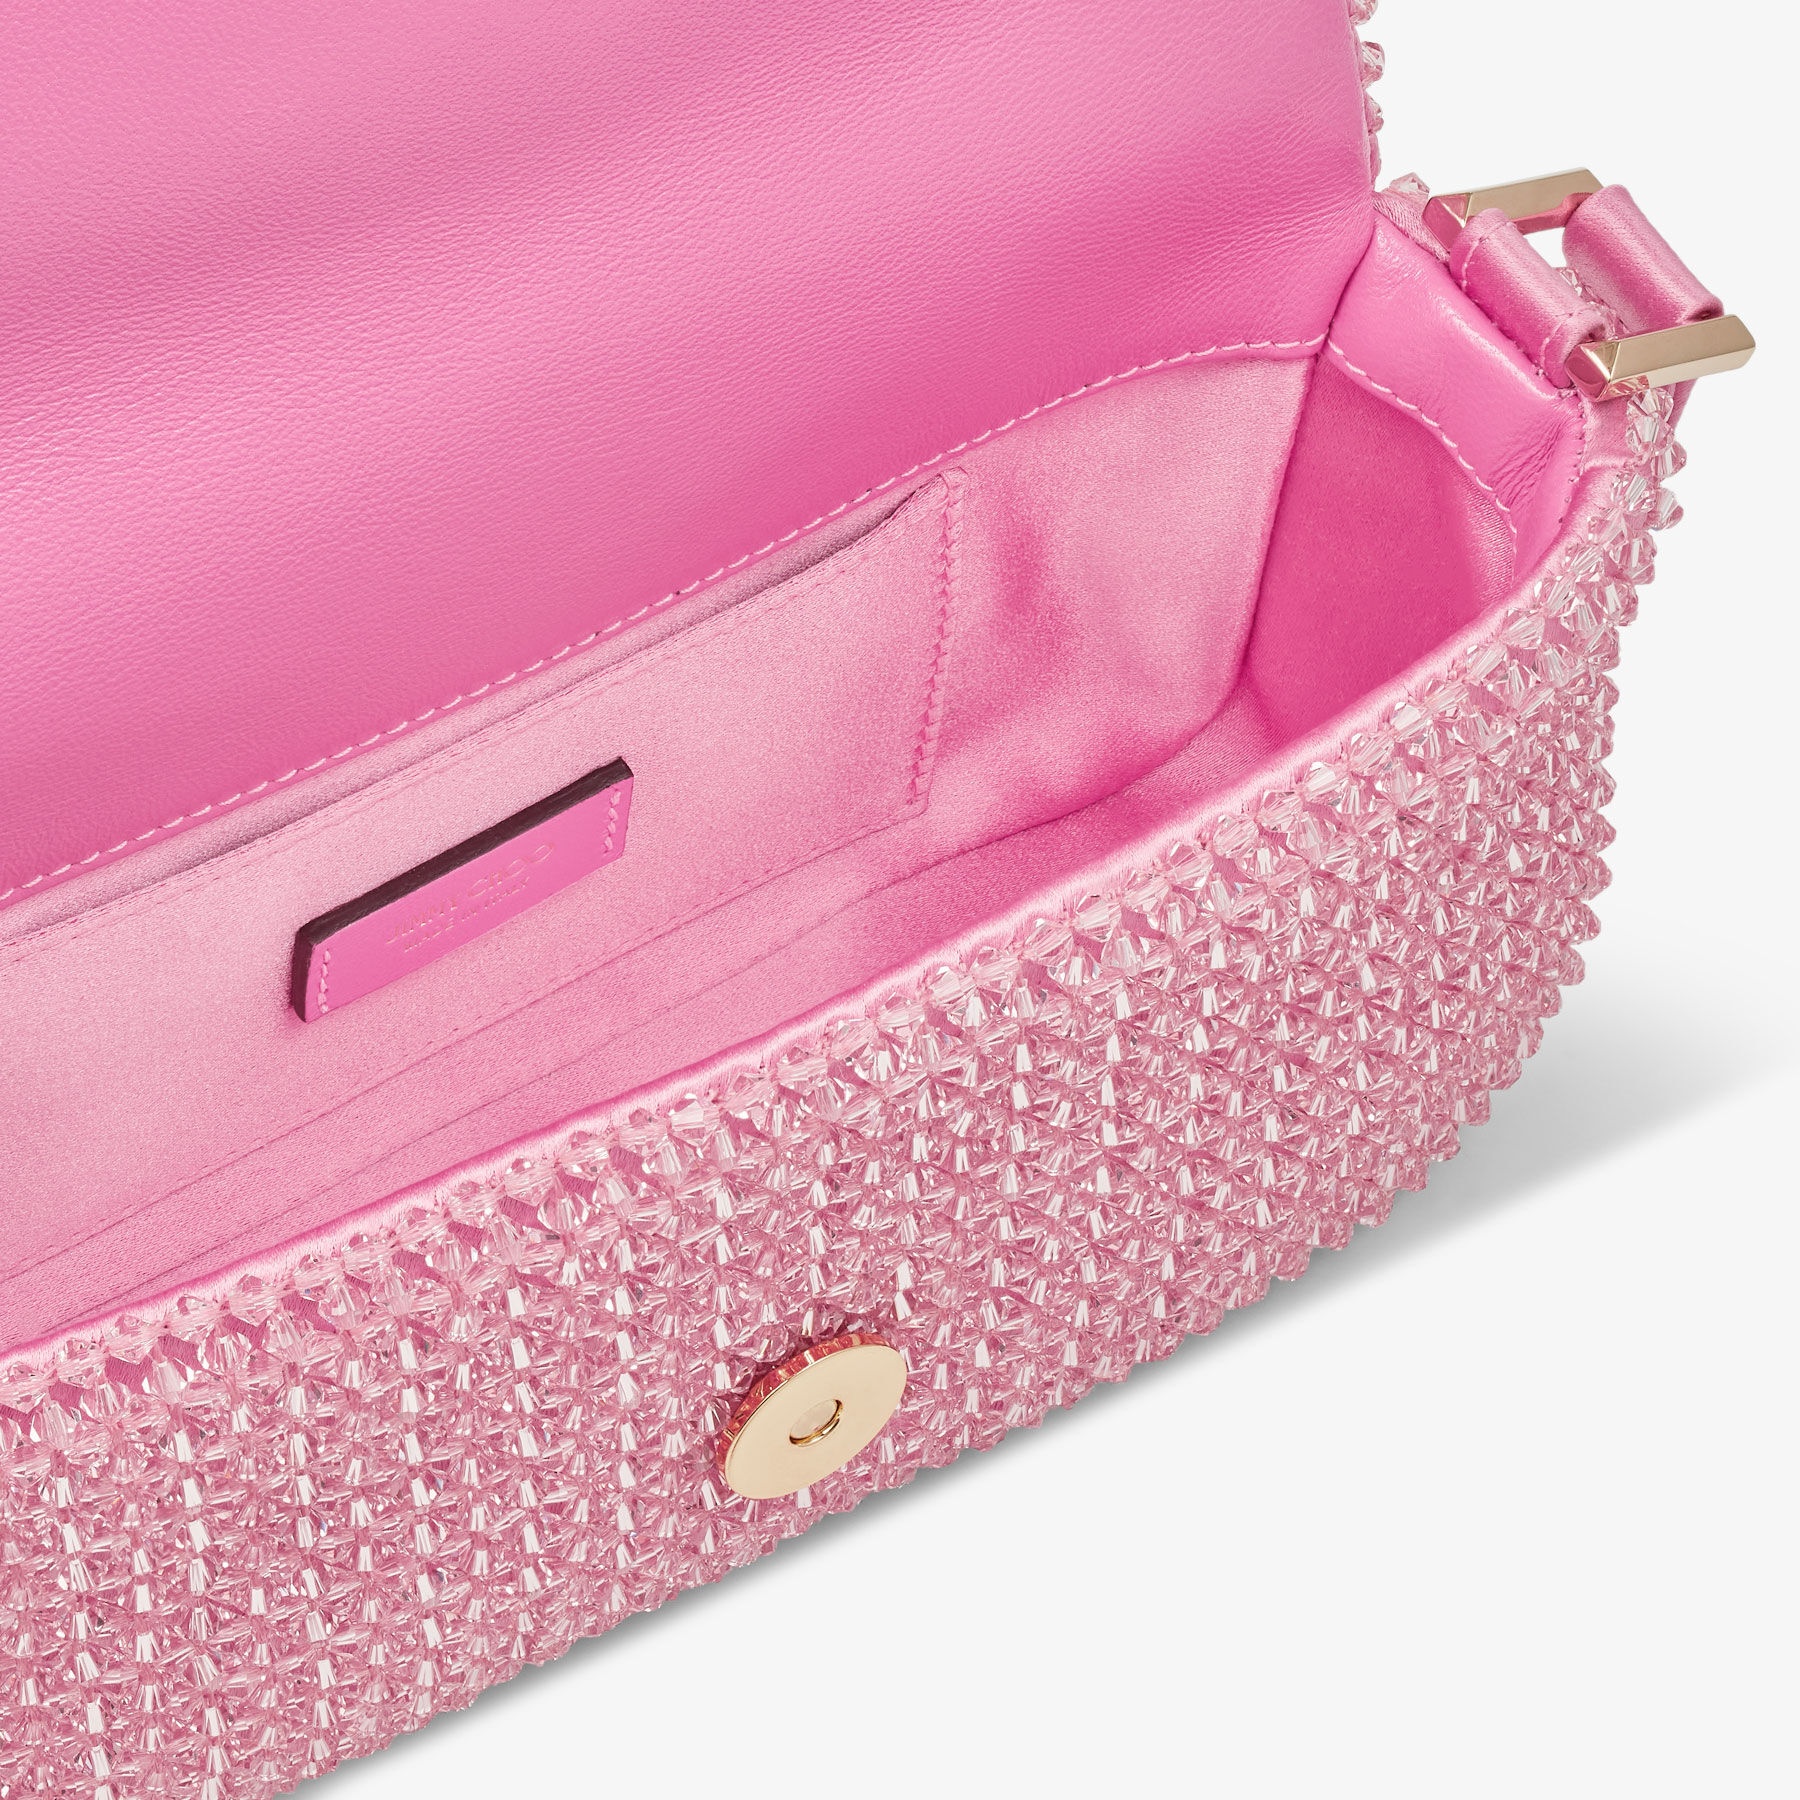 Avenue Mini Shoulder
Candy Pink Satin Mini Shoulder Bag with Crystal Fringe - 5